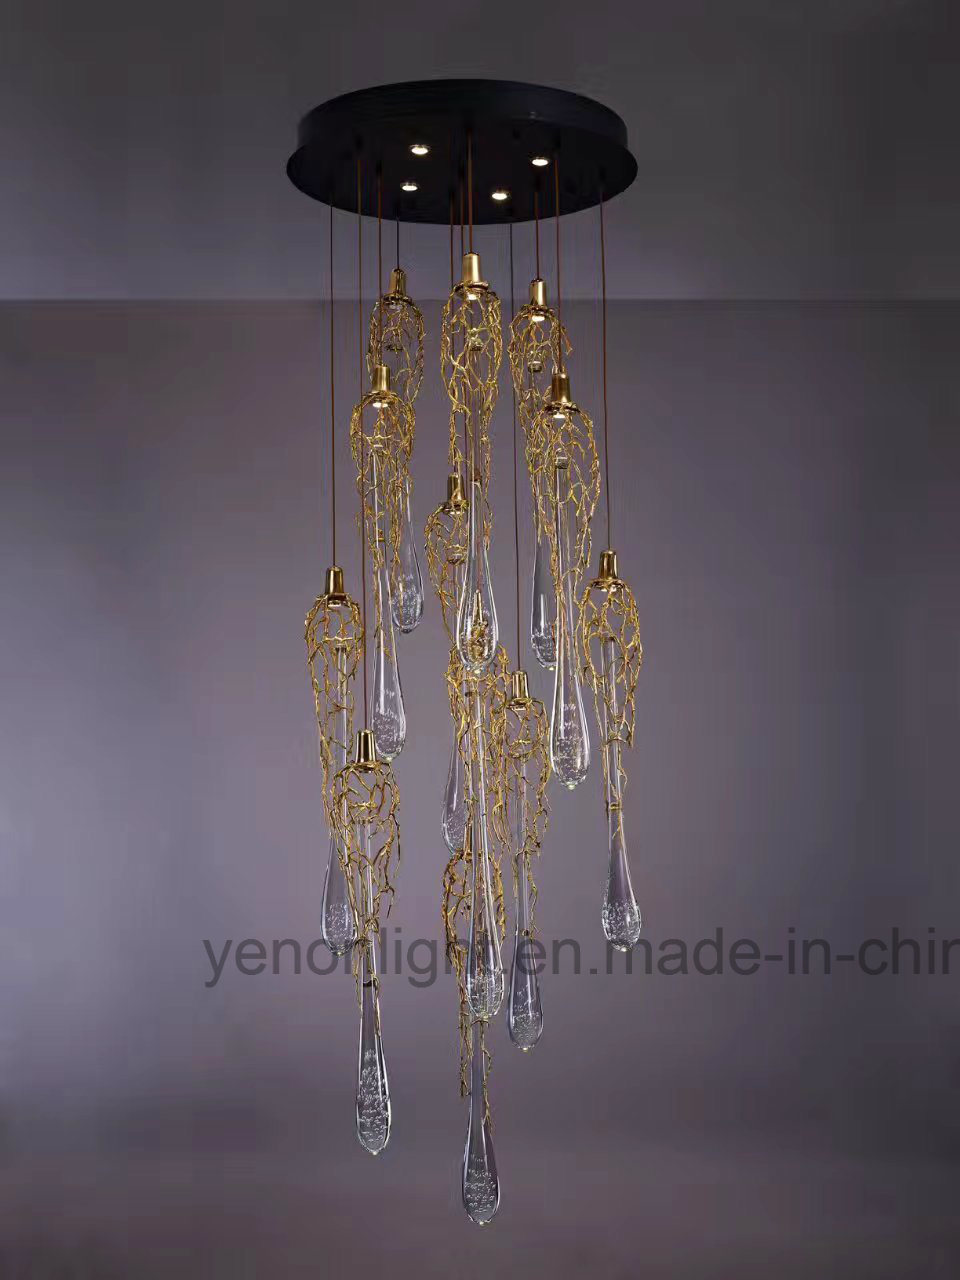 Luxury Branch Water Drops G9 Chandelier Design Copper Chandelier Lighting